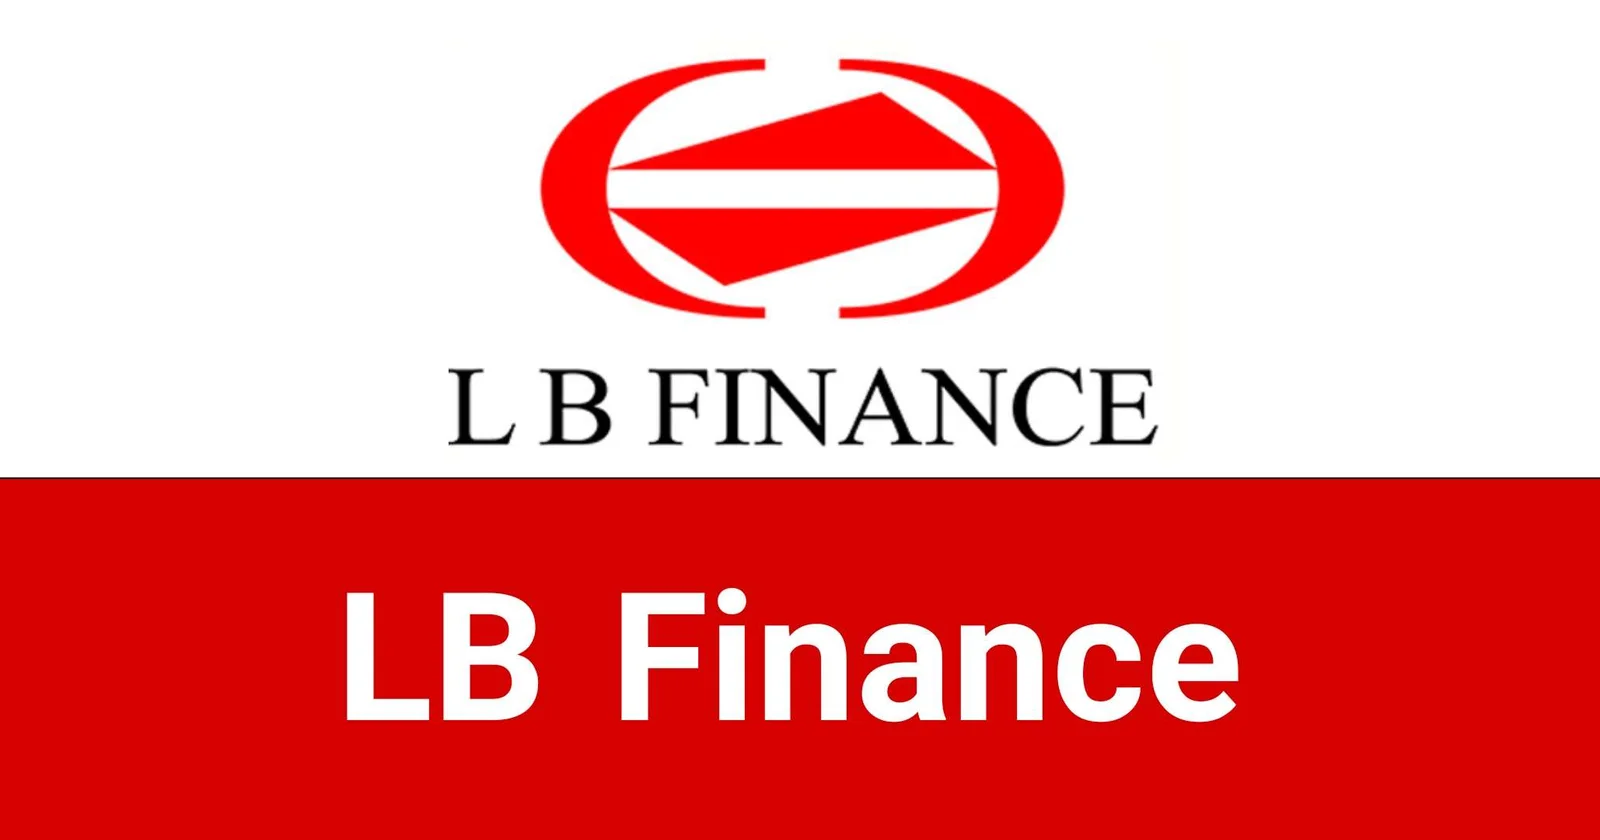 LB Finance Jobs Vacancies Recruitments Careers